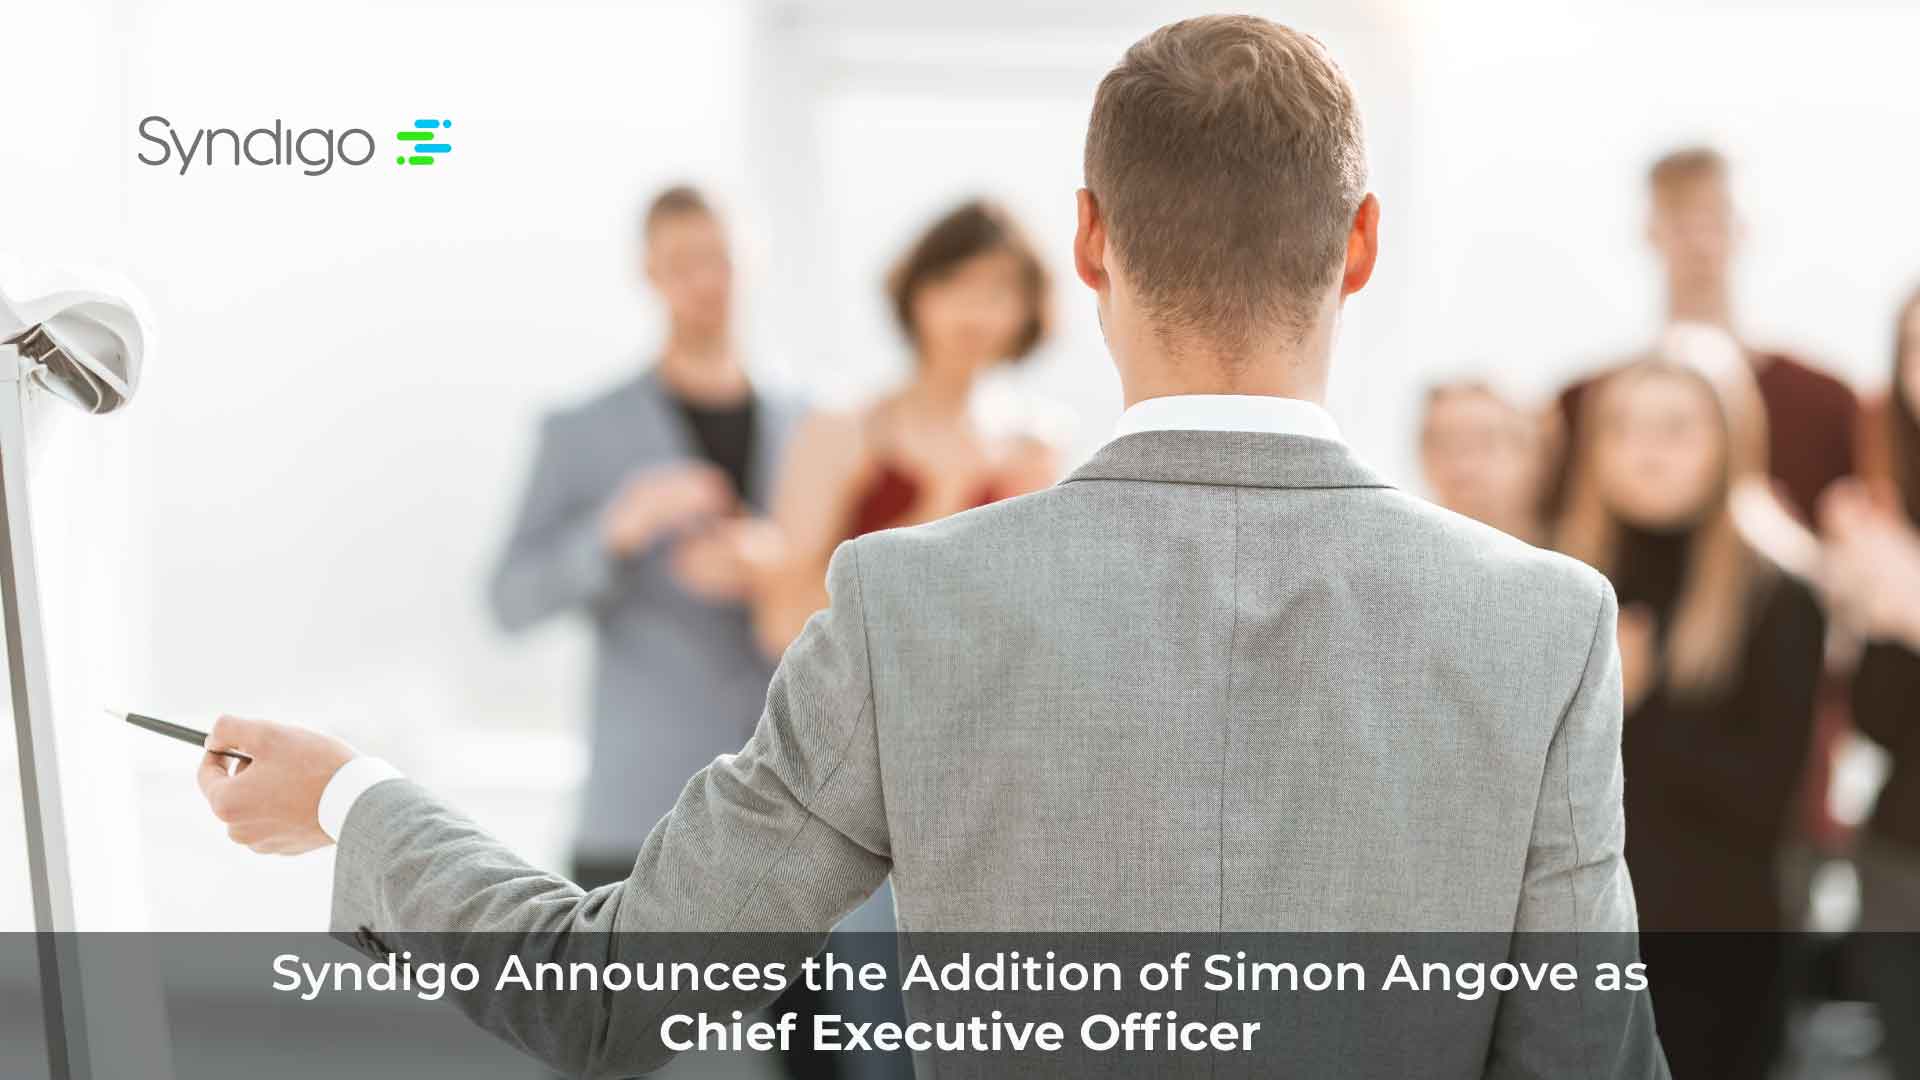 Syndigo Announces the Addition of Simon Angove as Chief Executive Officer